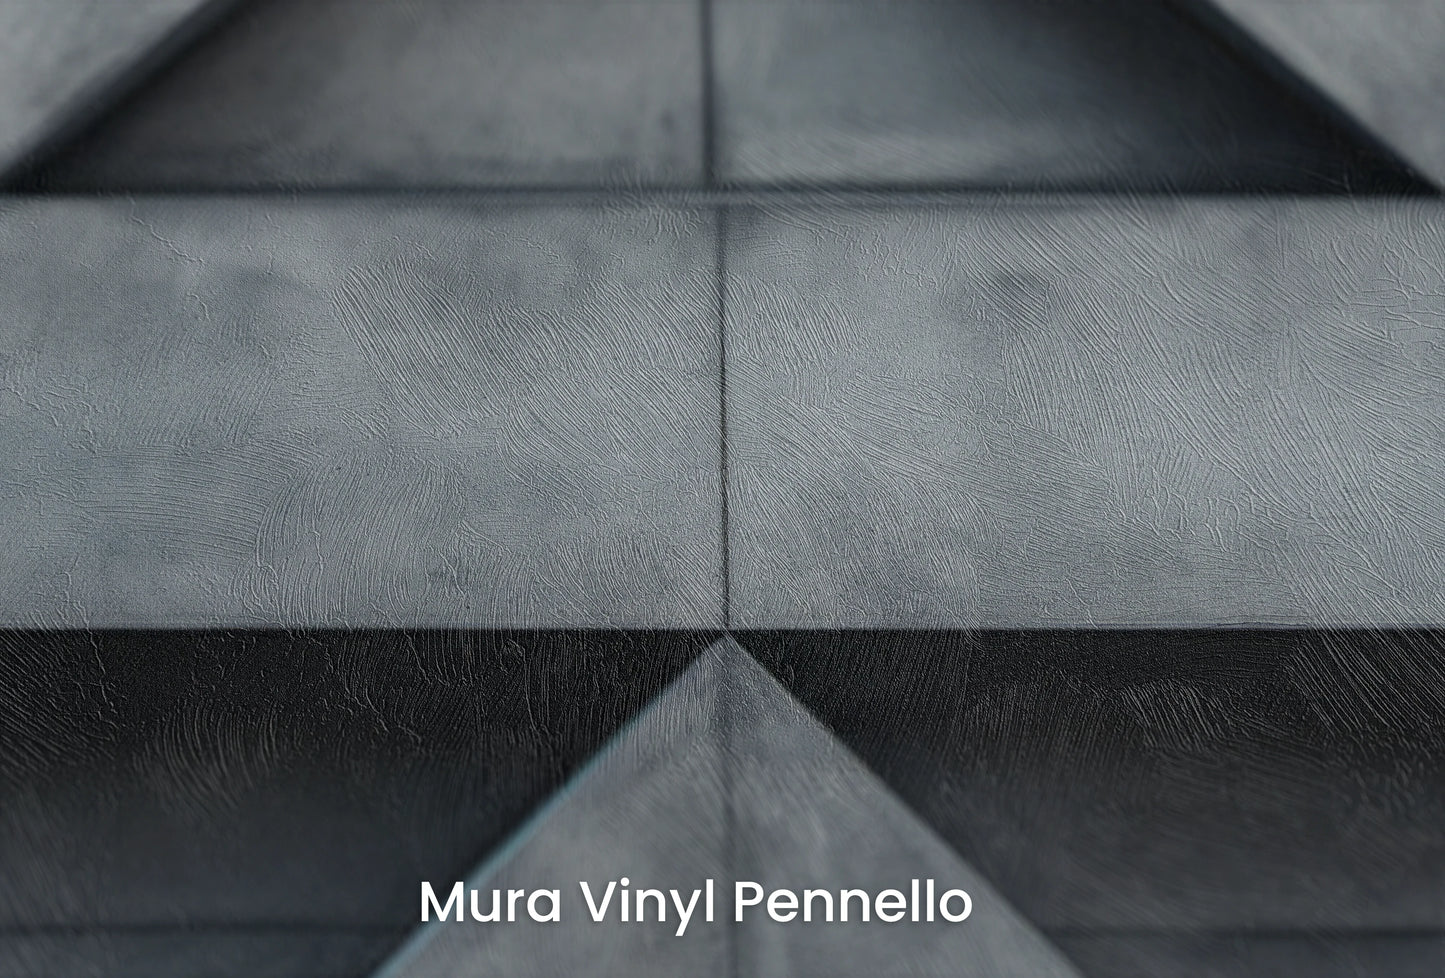 Zbliżenie na artystyczną fototapetę o nazwie Apex Elevation na podłożu Mura Vinyl Pennello - faktura pociągnięć pędzla malarskiego.